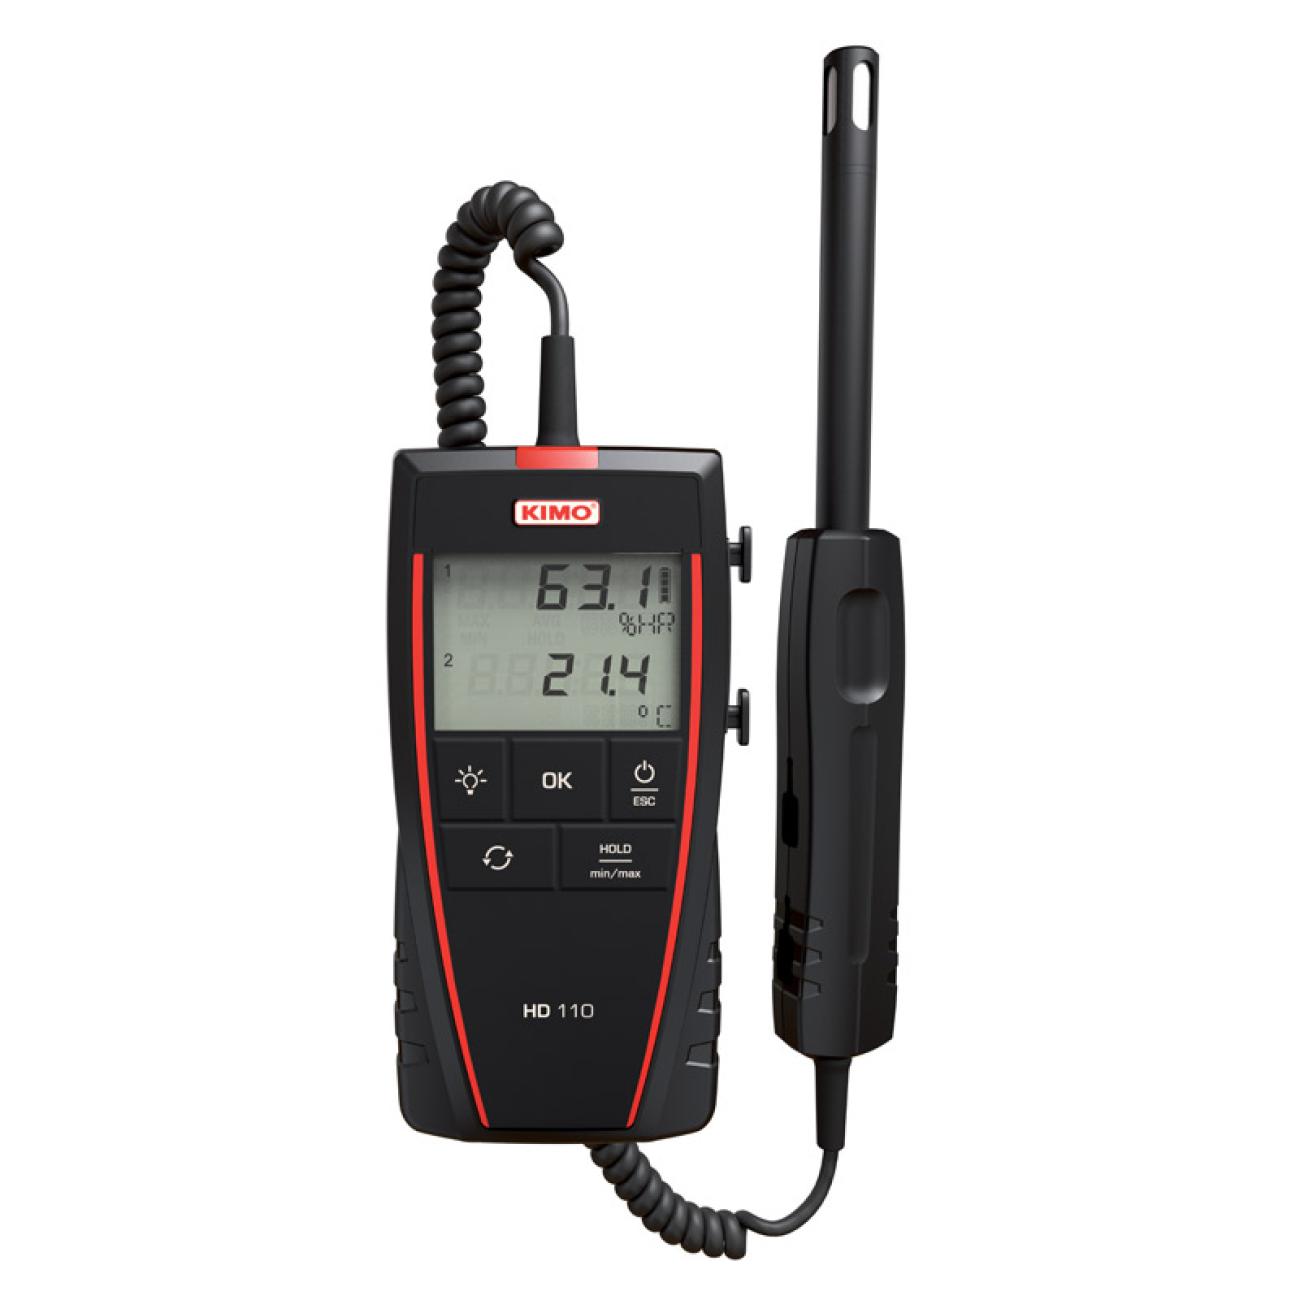 Hygromètre de poche 610 à sonde intégrée pour la mesure de l'humidité /  point de rosée / température